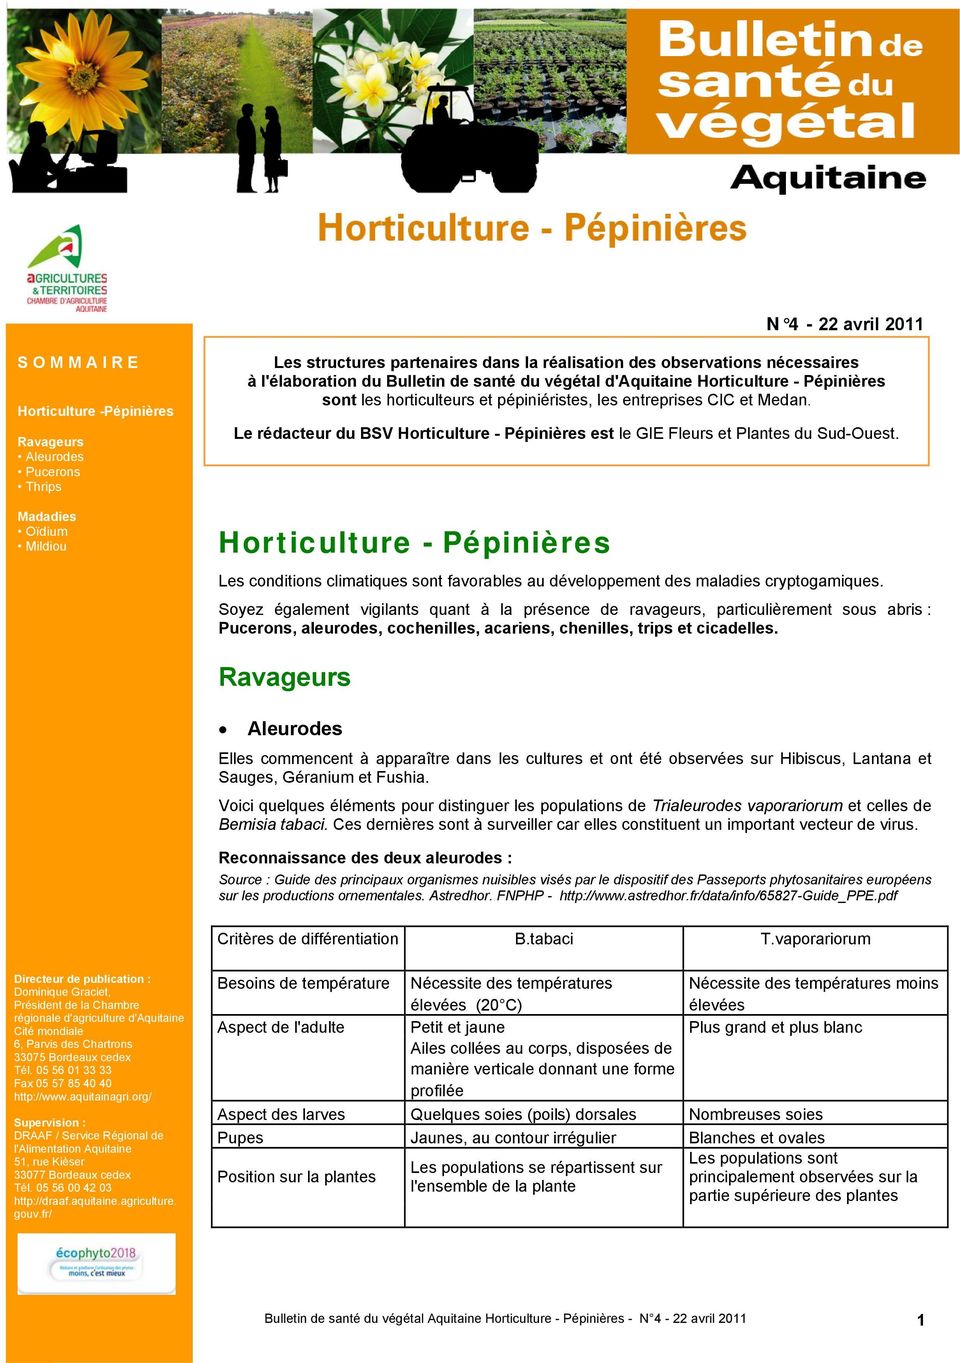 Le rédacteur du BSV Horticulture - Pépinières est le GIE Fleurs et Plantes du Sud-Ouest.